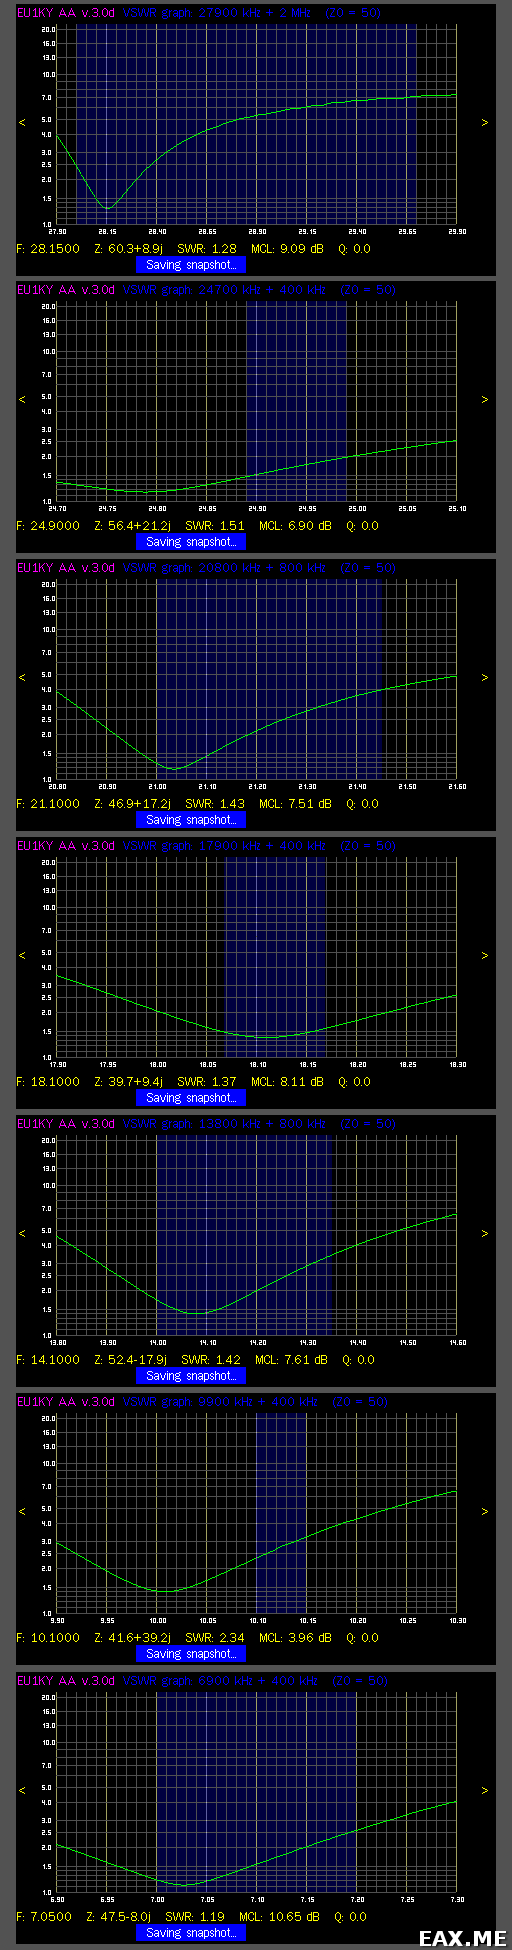 Графики КСВ антенны на семь КВ диапазонов